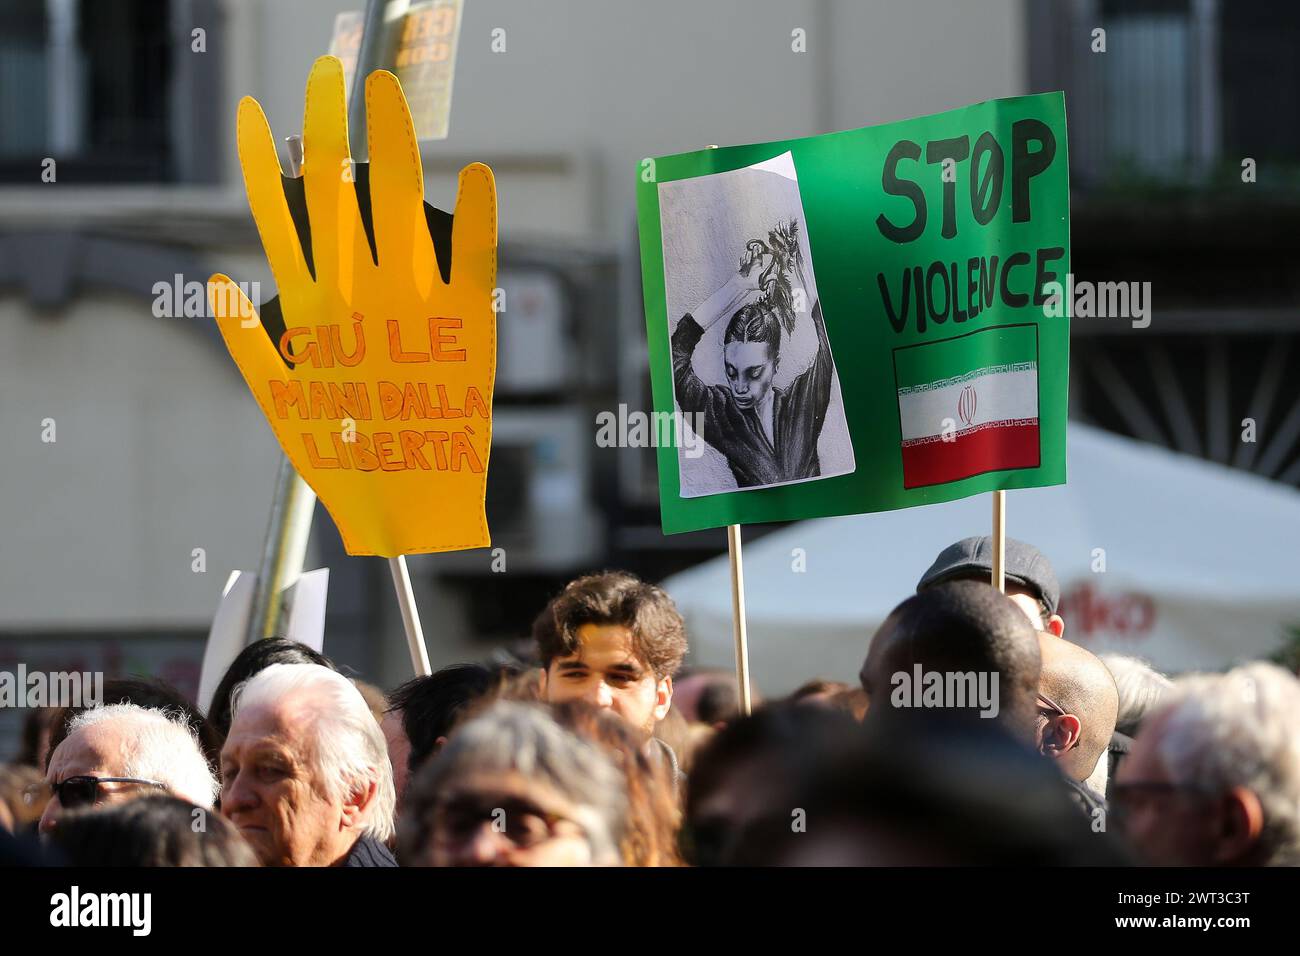 Les gens avec des pancartes, pendant le rassemblement de protestation et de solidarité avec le peuple iranien "Women Life Freedom", contre l'oppression et la discrimination en I. Banque D'Images